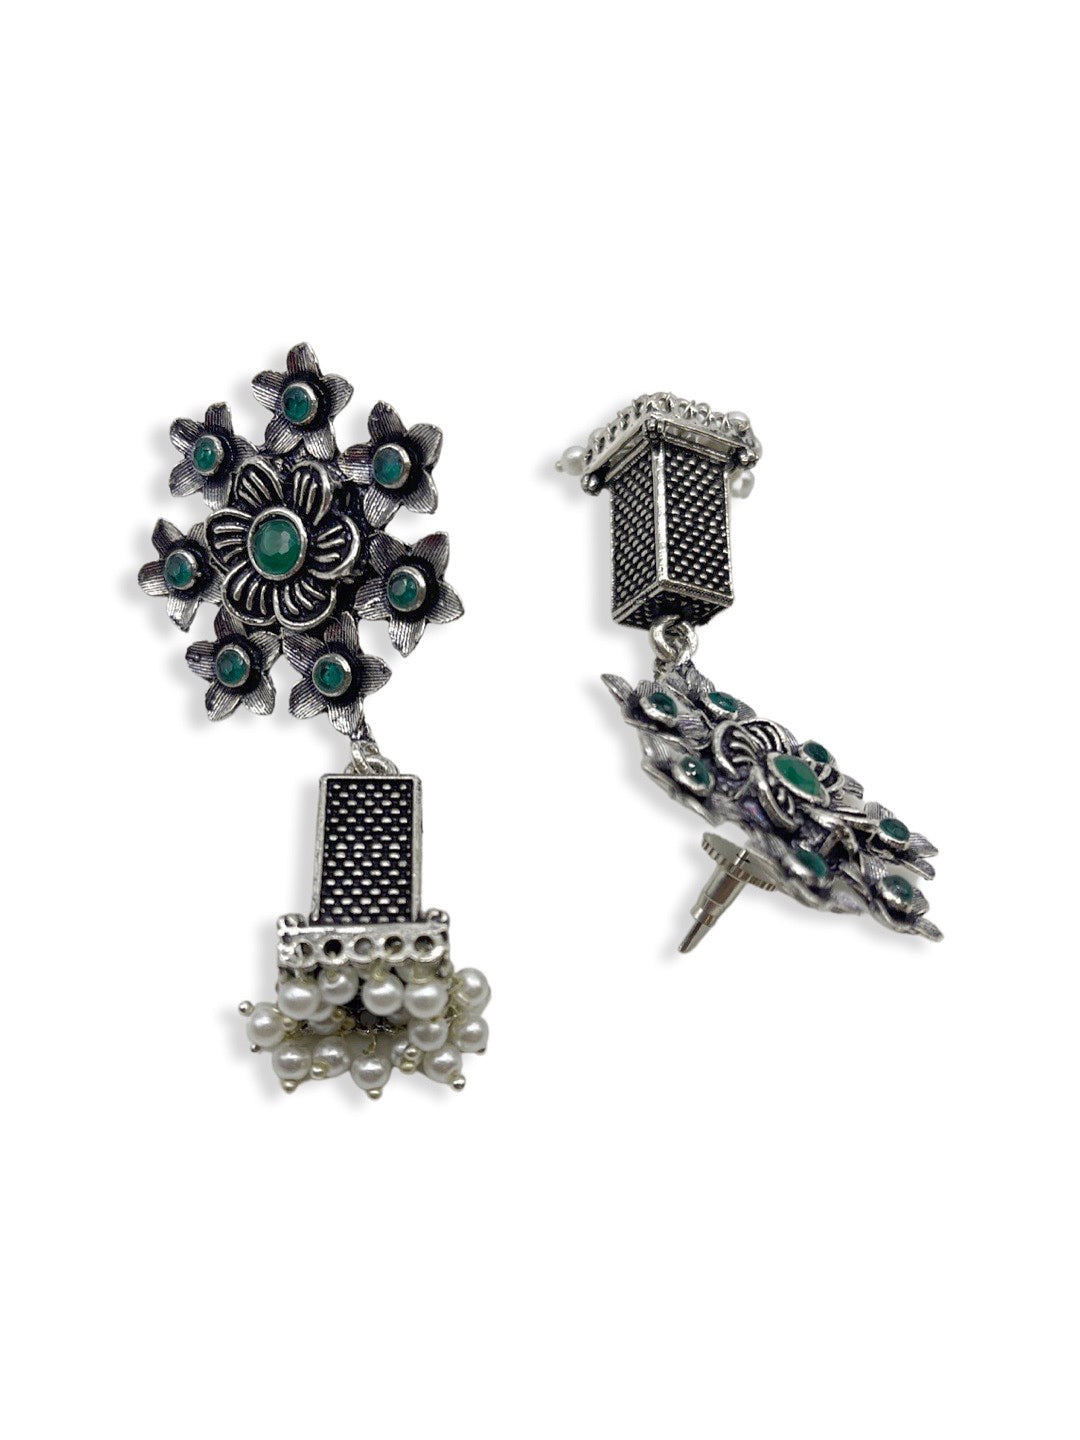 925 Sterling Silver Jhumka Earrings, 15 Gm at Rs 1303.05/pair in Jaipur |  ID: 15093292873